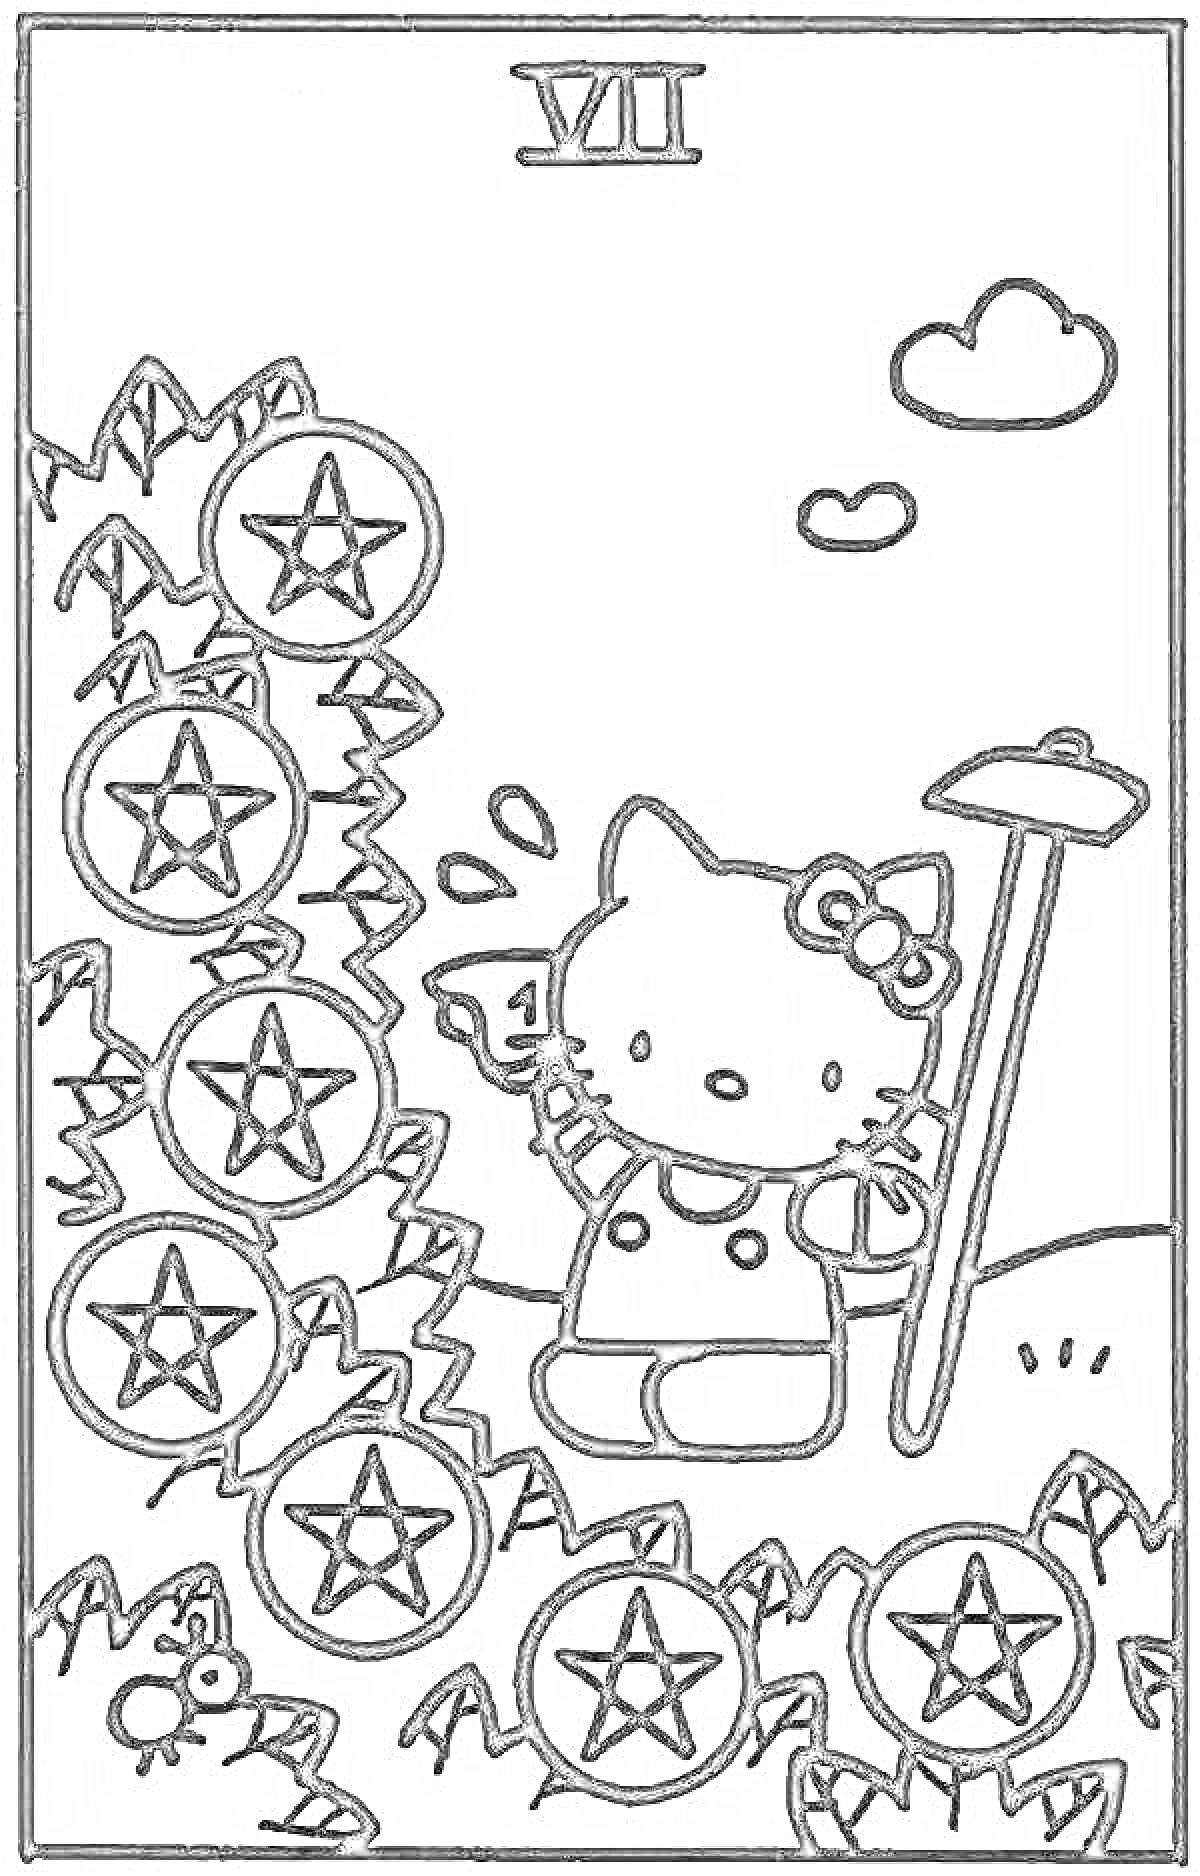 РаскраскаКарта Уно Hello Kitty с изображением Hello Kitty в саду с семью звездами и лопатой